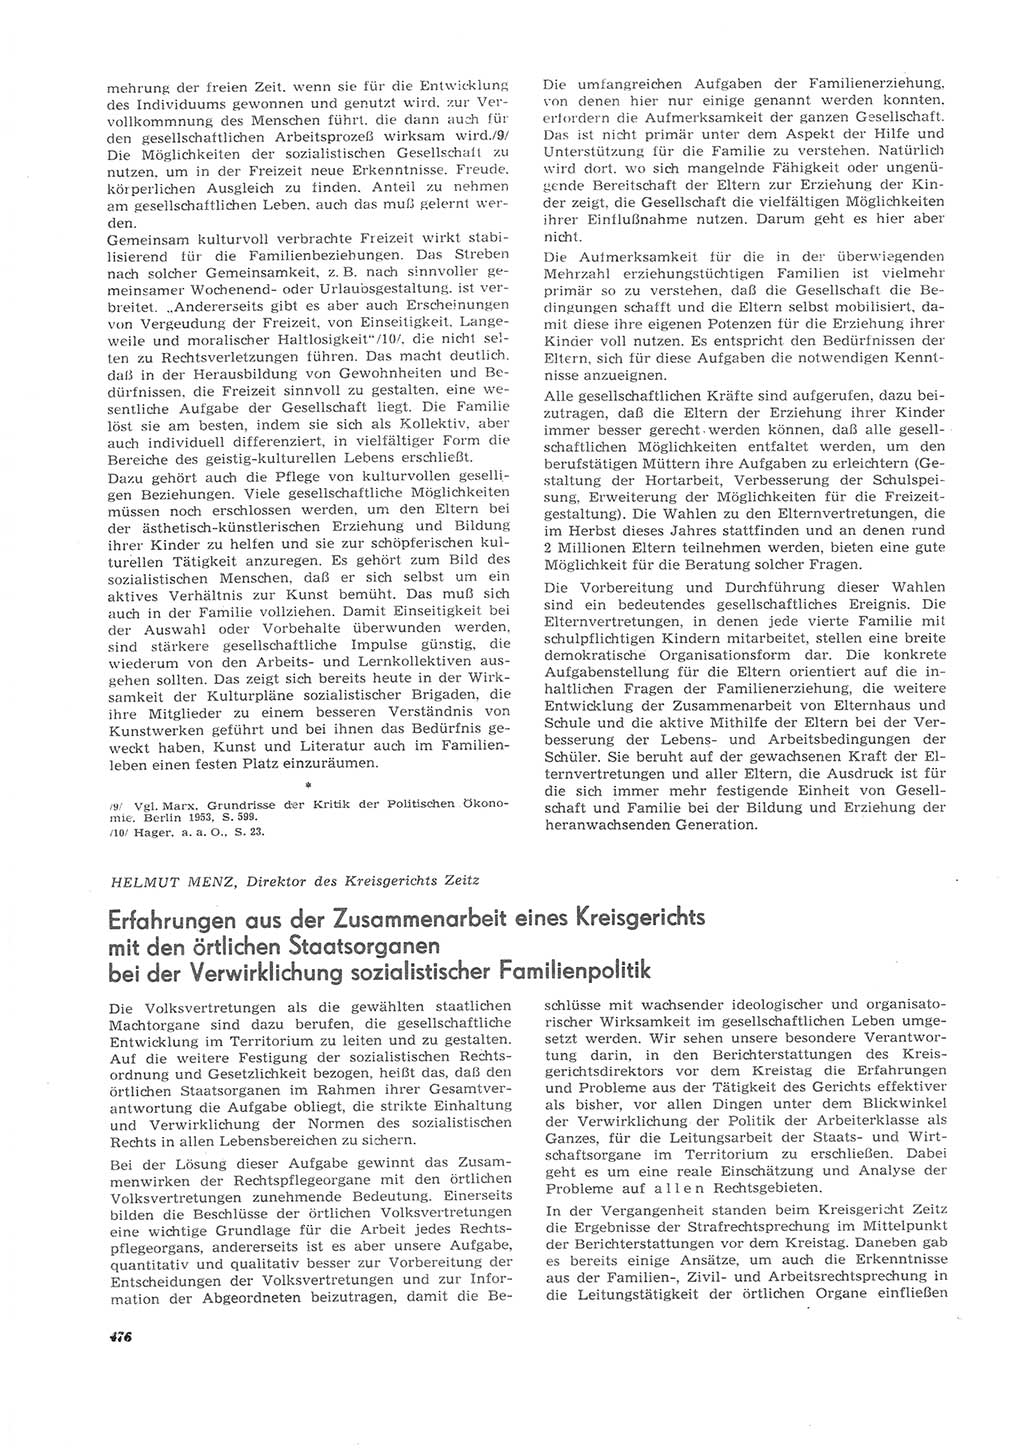 Neue Justiz (NJ), Zeitschrift für Recht und Rechtswissenschaft [Deutsche Demokratische Republik (DDR)], 26. Jahrgang 1972, Seite 476 (NJ DDR 1972, S. 476)